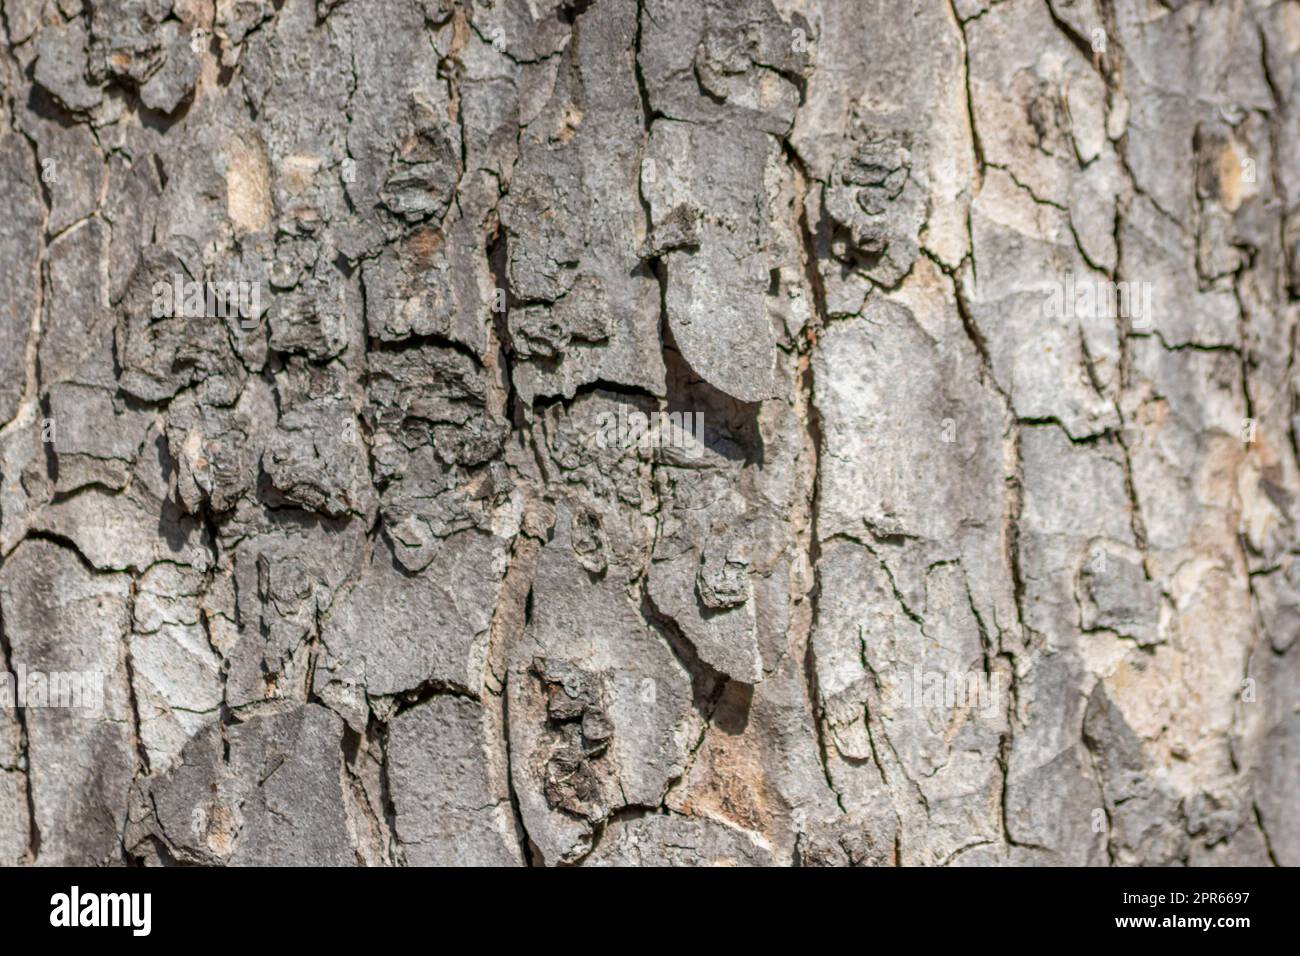 Baumrindenmakro mit feinen natürlichen Strukturen und raue Baumrinde als natürlicher und ökologischer Hintergrund zeigt eine wunderschöne Holzstruktur mit Narben und Schutz als Lebensraum für kleine Insekten Stockfoto